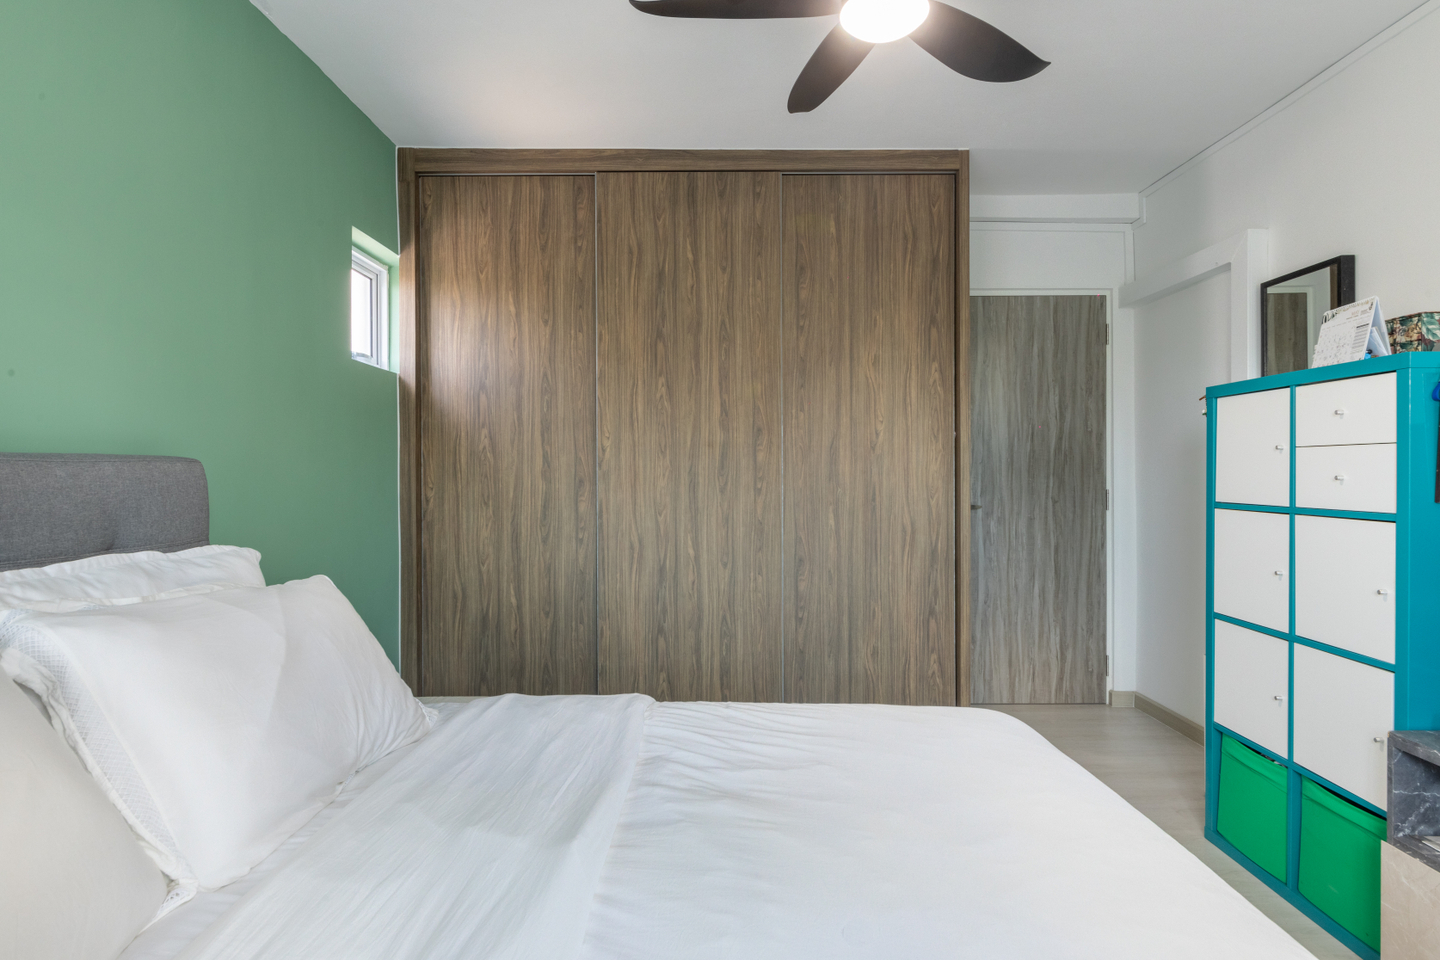 Minimalist Room Design With Dark Wooden Storage Cabinets